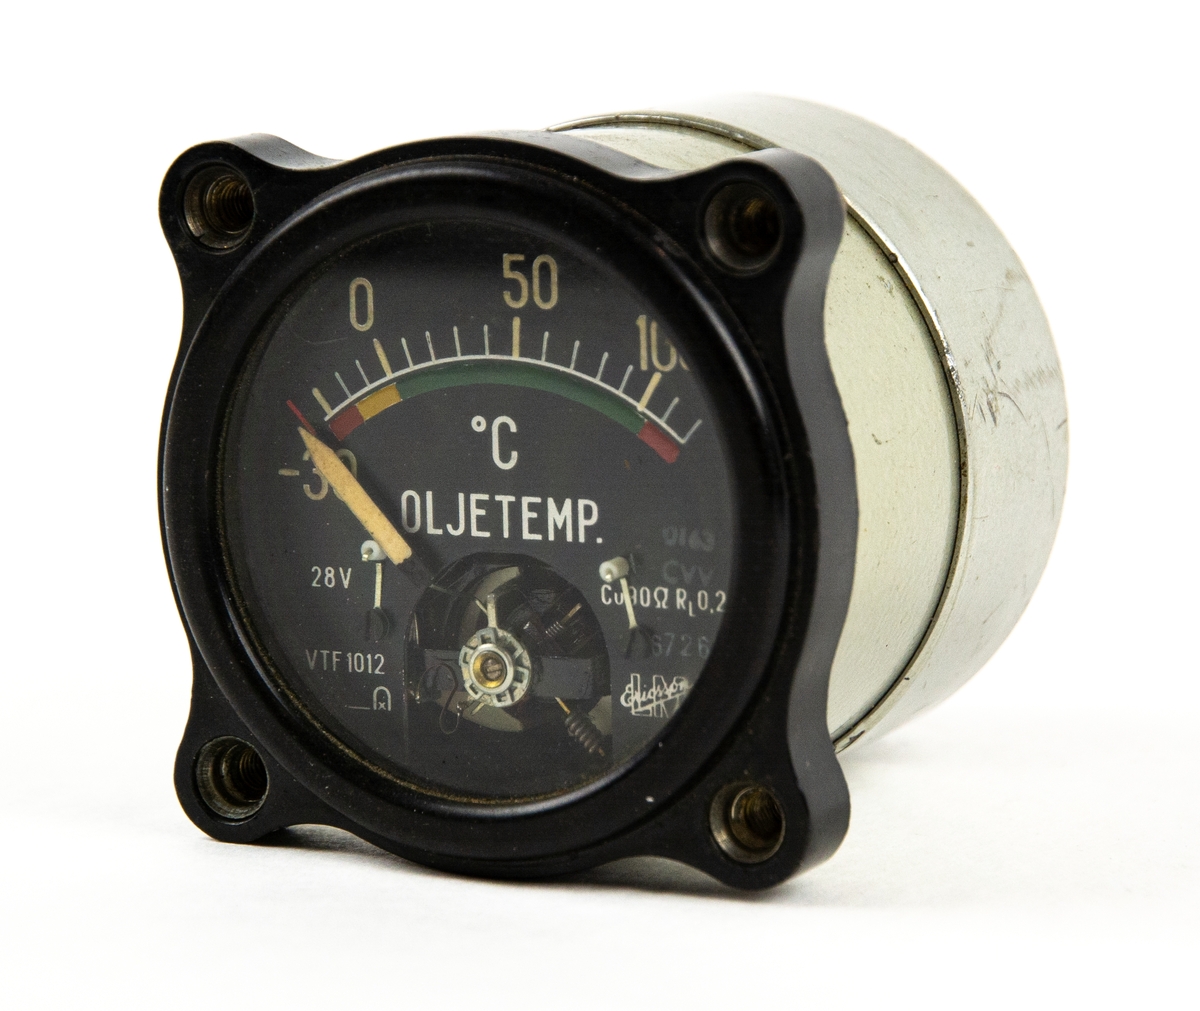 Oljetemperaturindikator VTF 1012, för Fpl 29. Graderad -30 - +120 grader celcius. För Fpl 29.